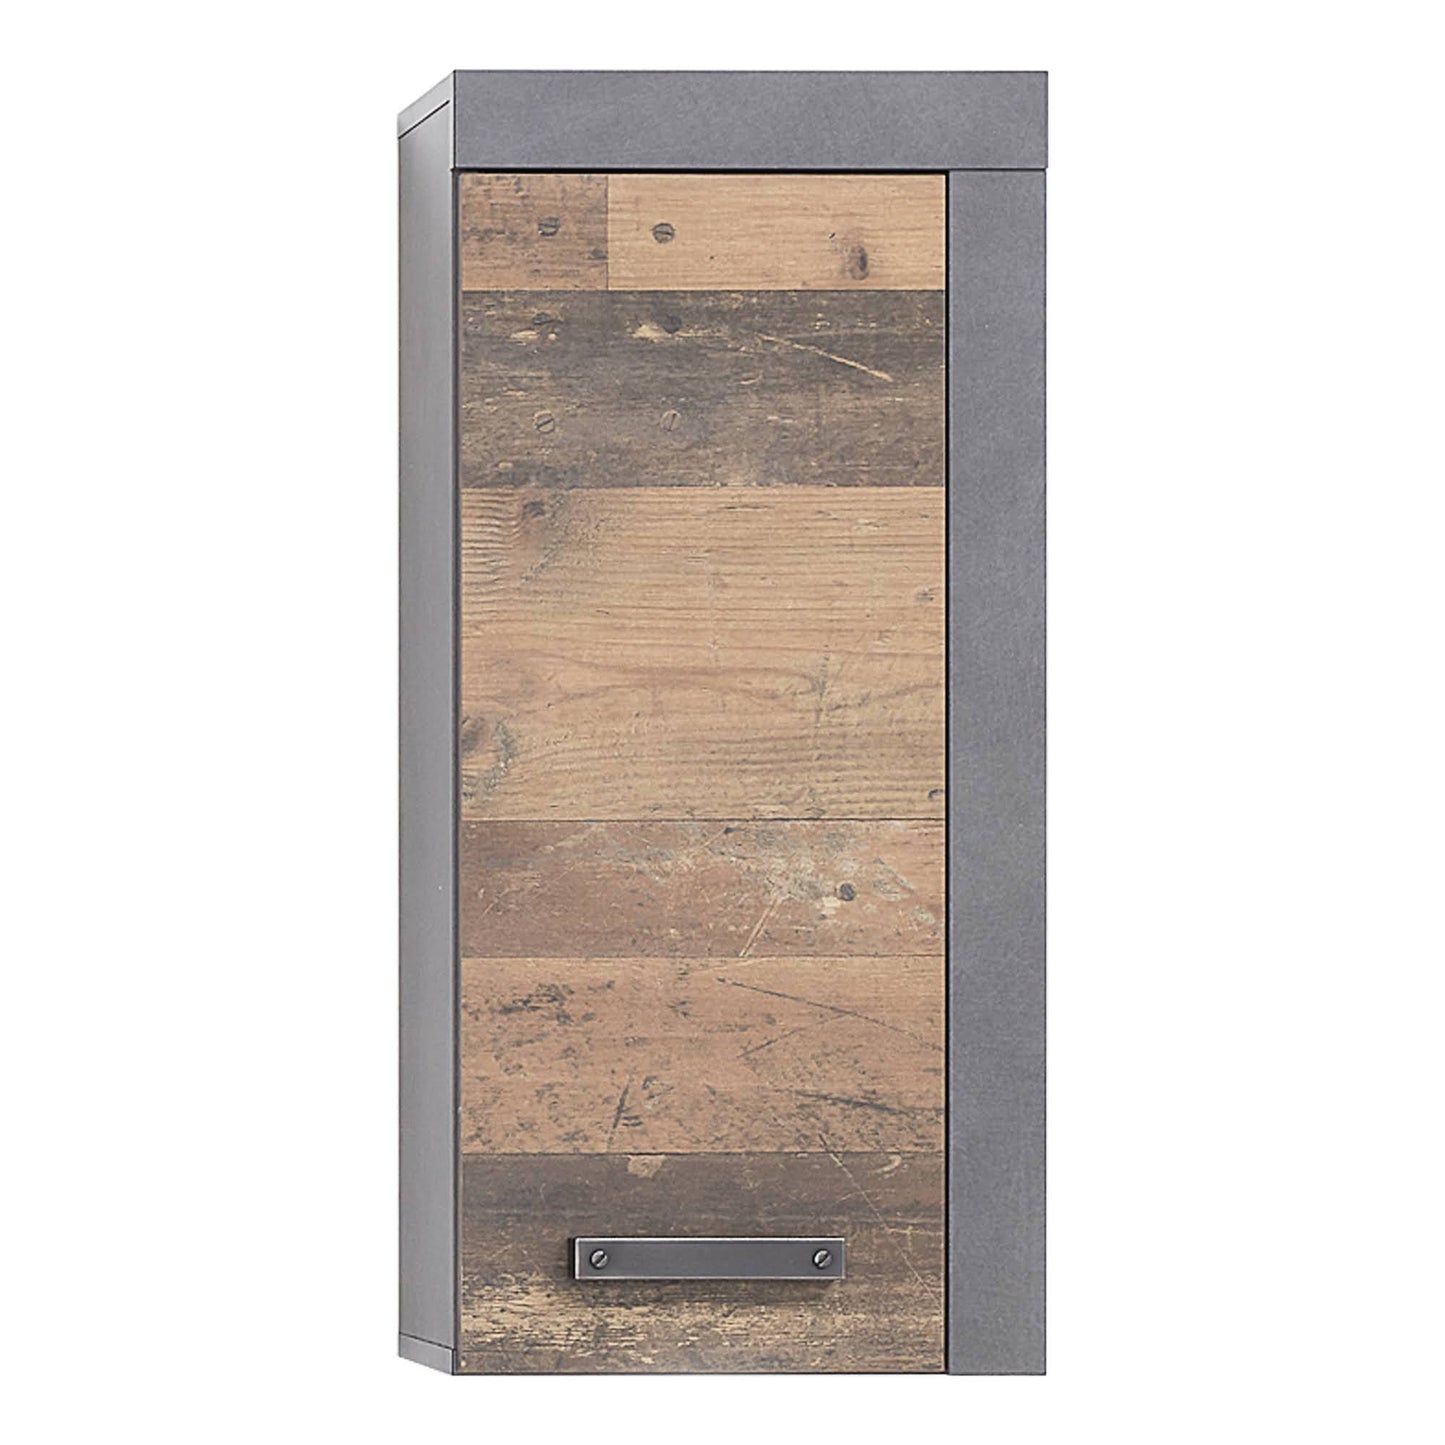 Meuble de salle de bain Chicalote de Nancy - Meuble de rangement - Marron et gris - 33 x 79 x 23 cm